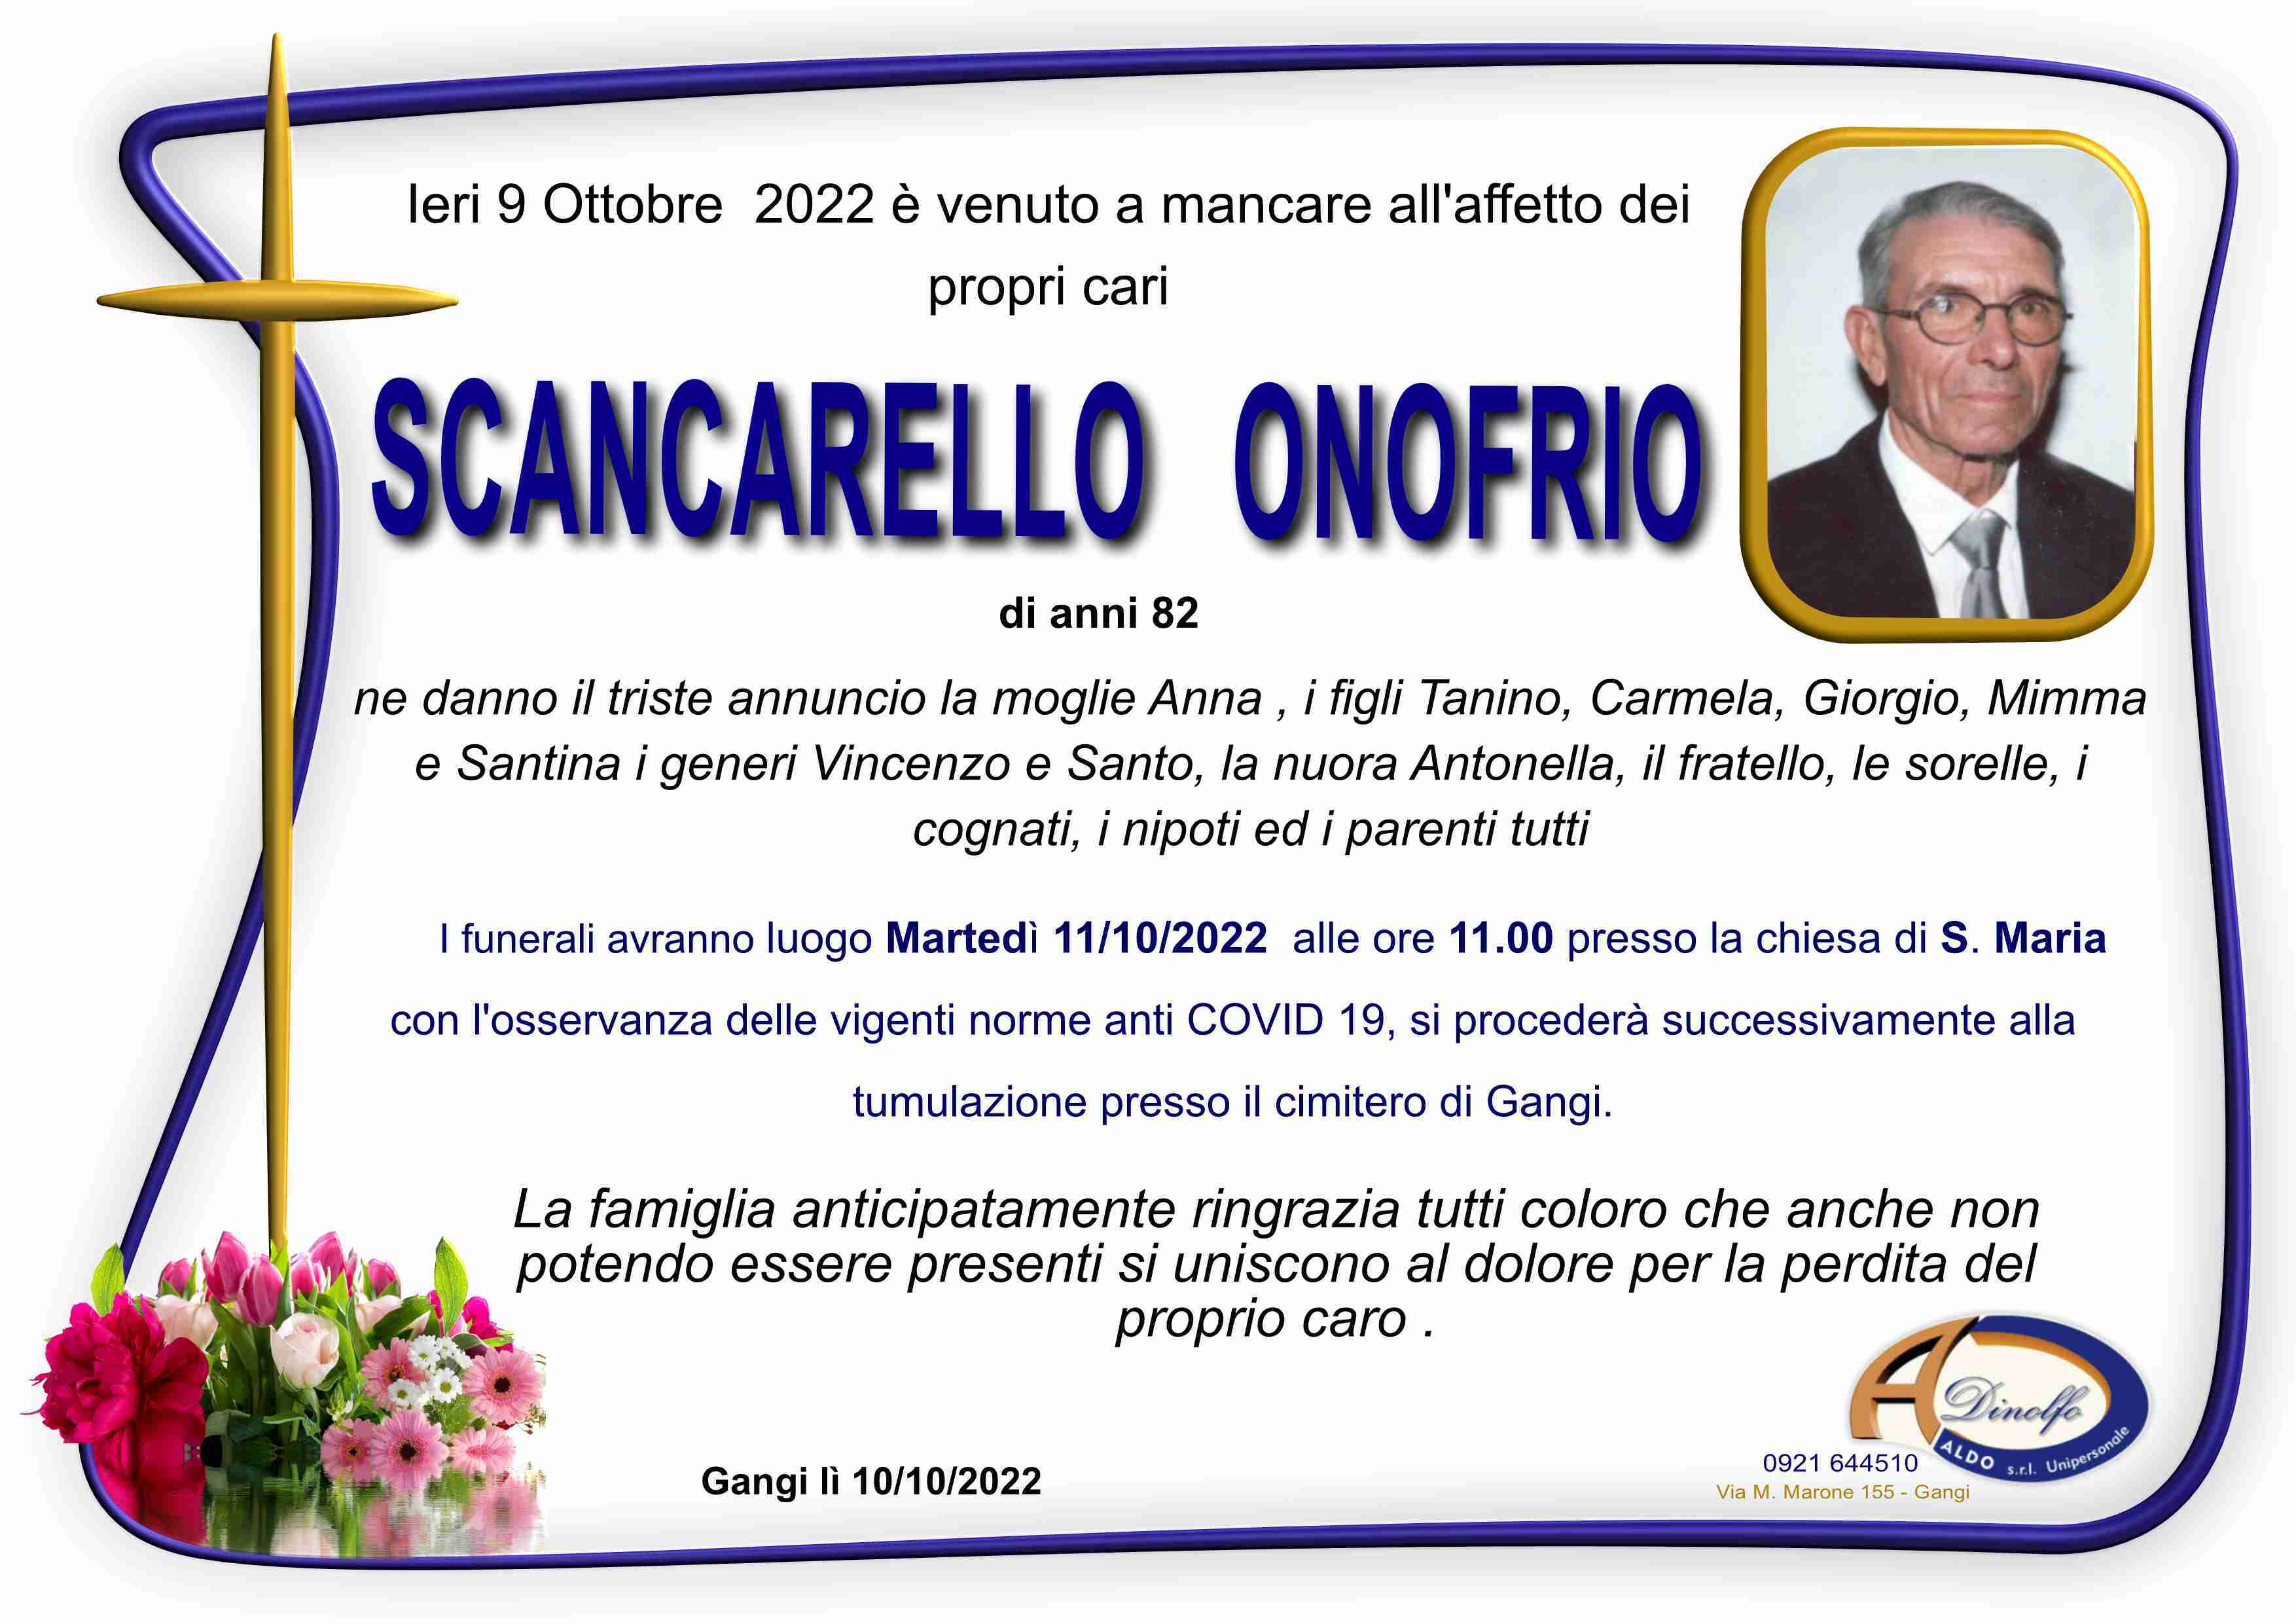 Onofrio Scancarello